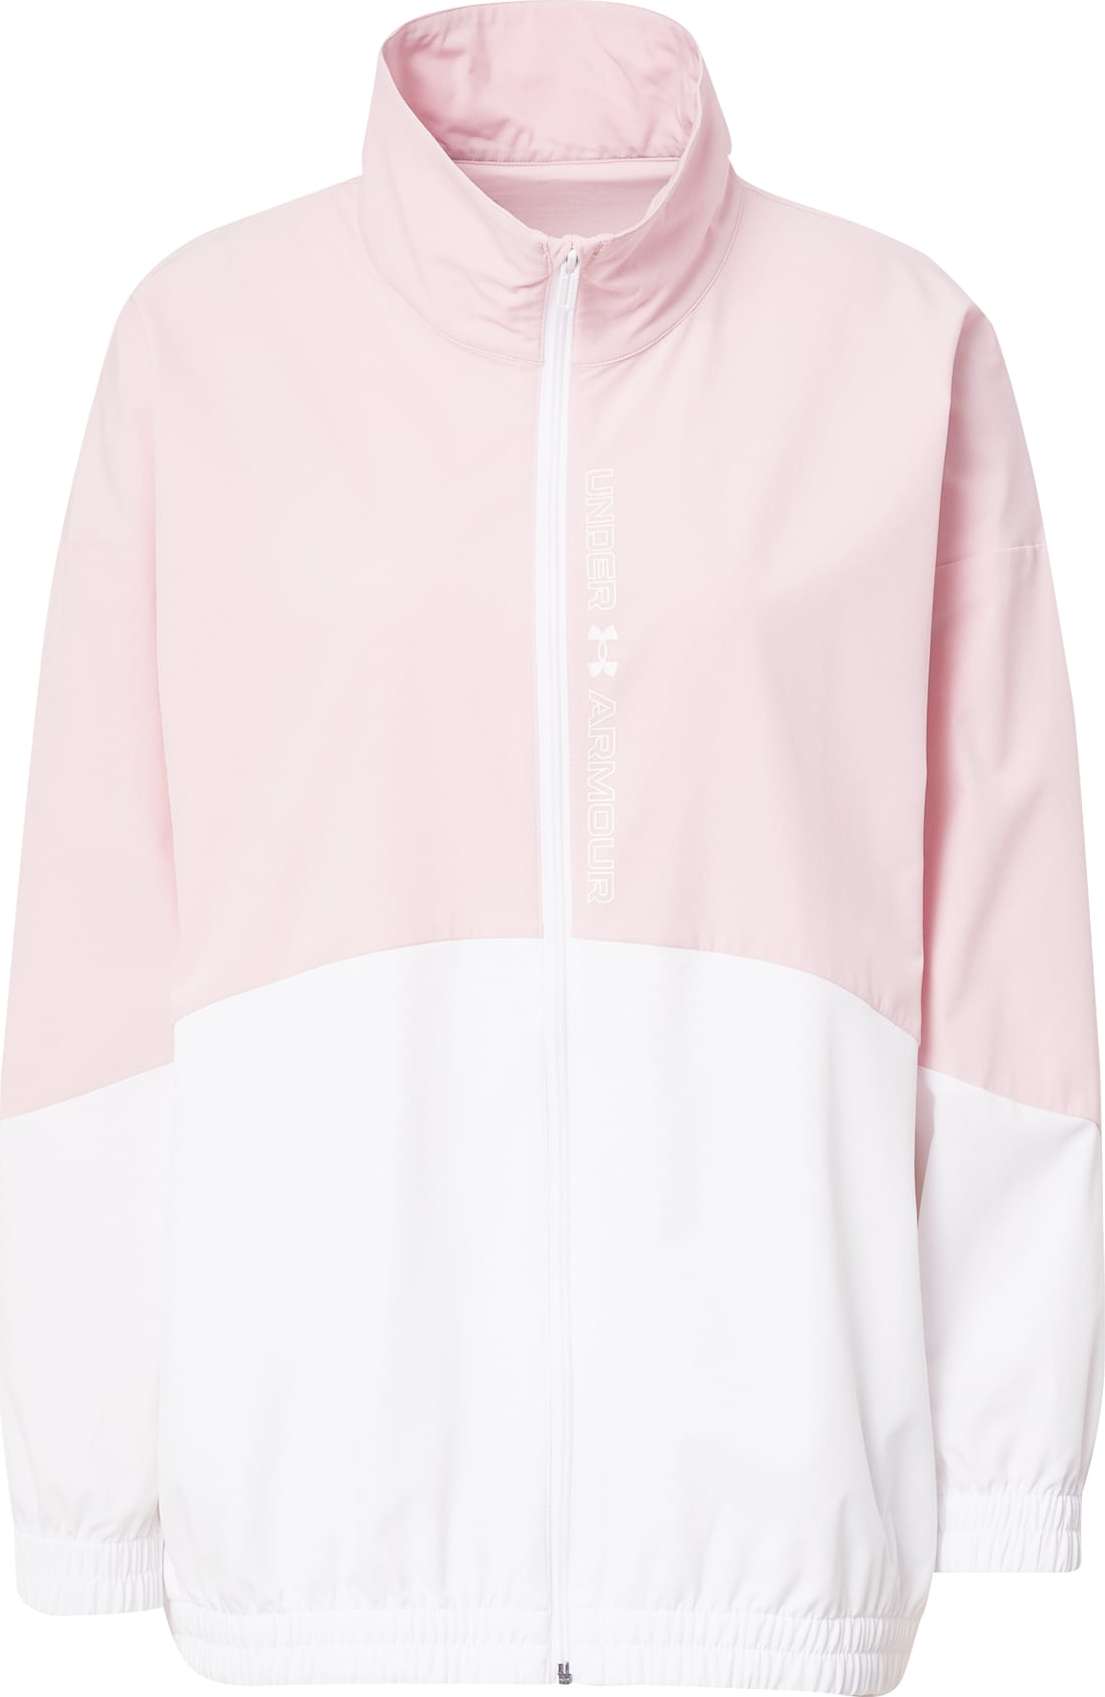 UNDER ARMOUR Sportovní bunda pastelově růžová / bílá